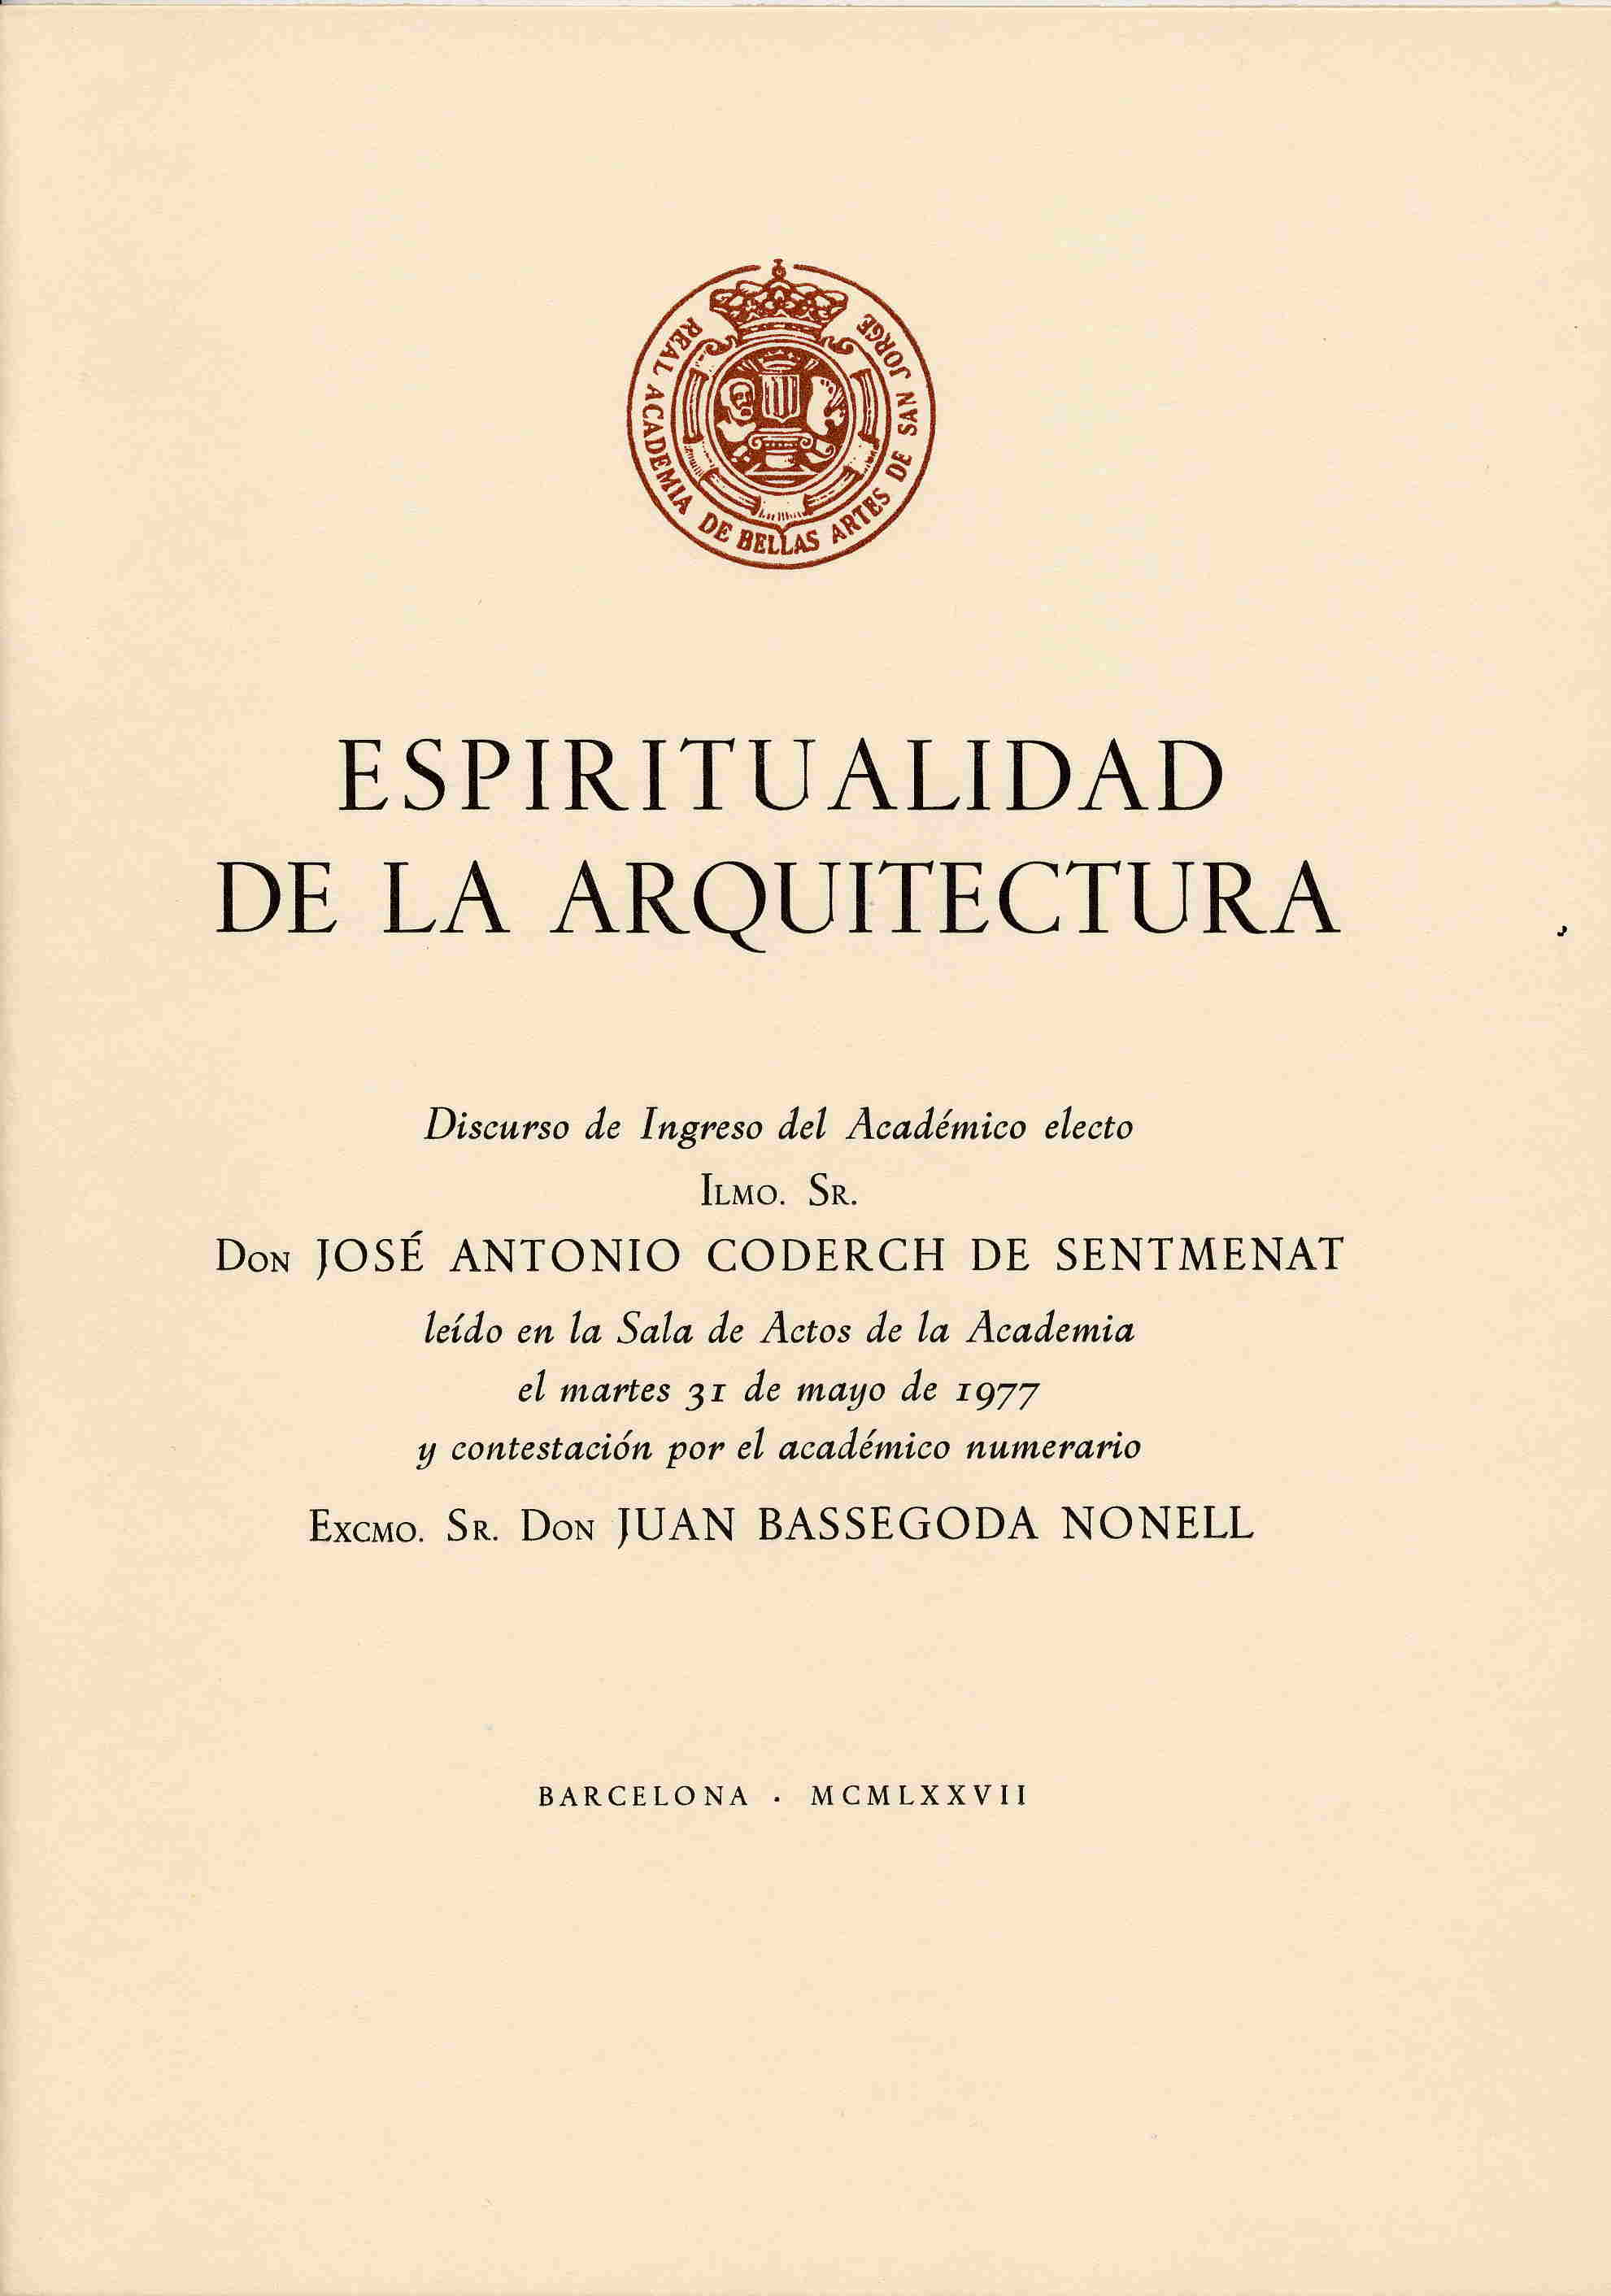 La espiritualidad en la arquitectura - Coderch de Sentmenat, José Antonio